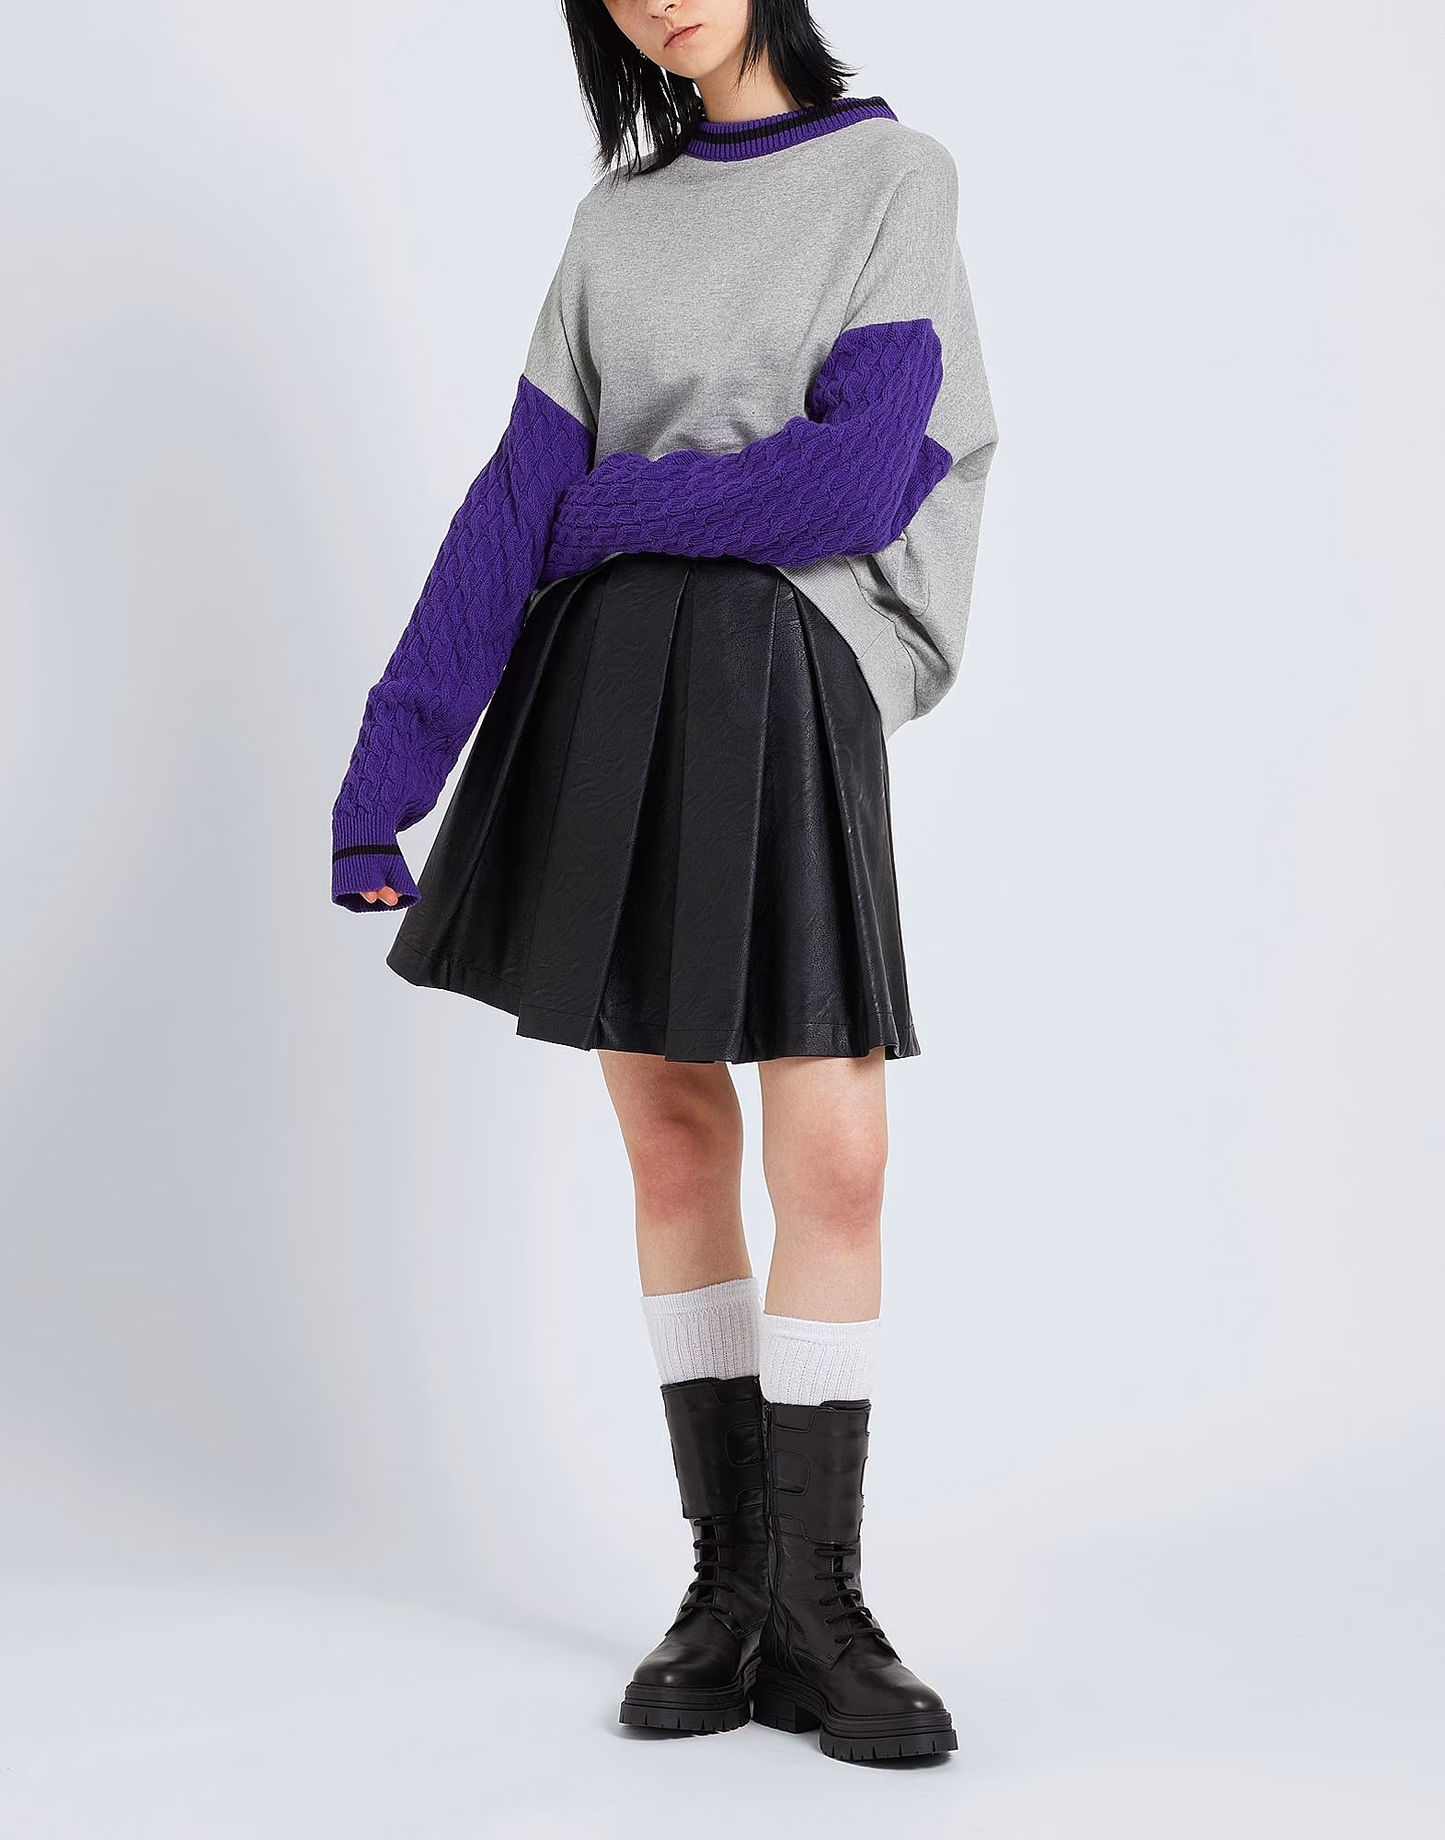 Parioli Elegance High-Waist Pleated Mini Skirt